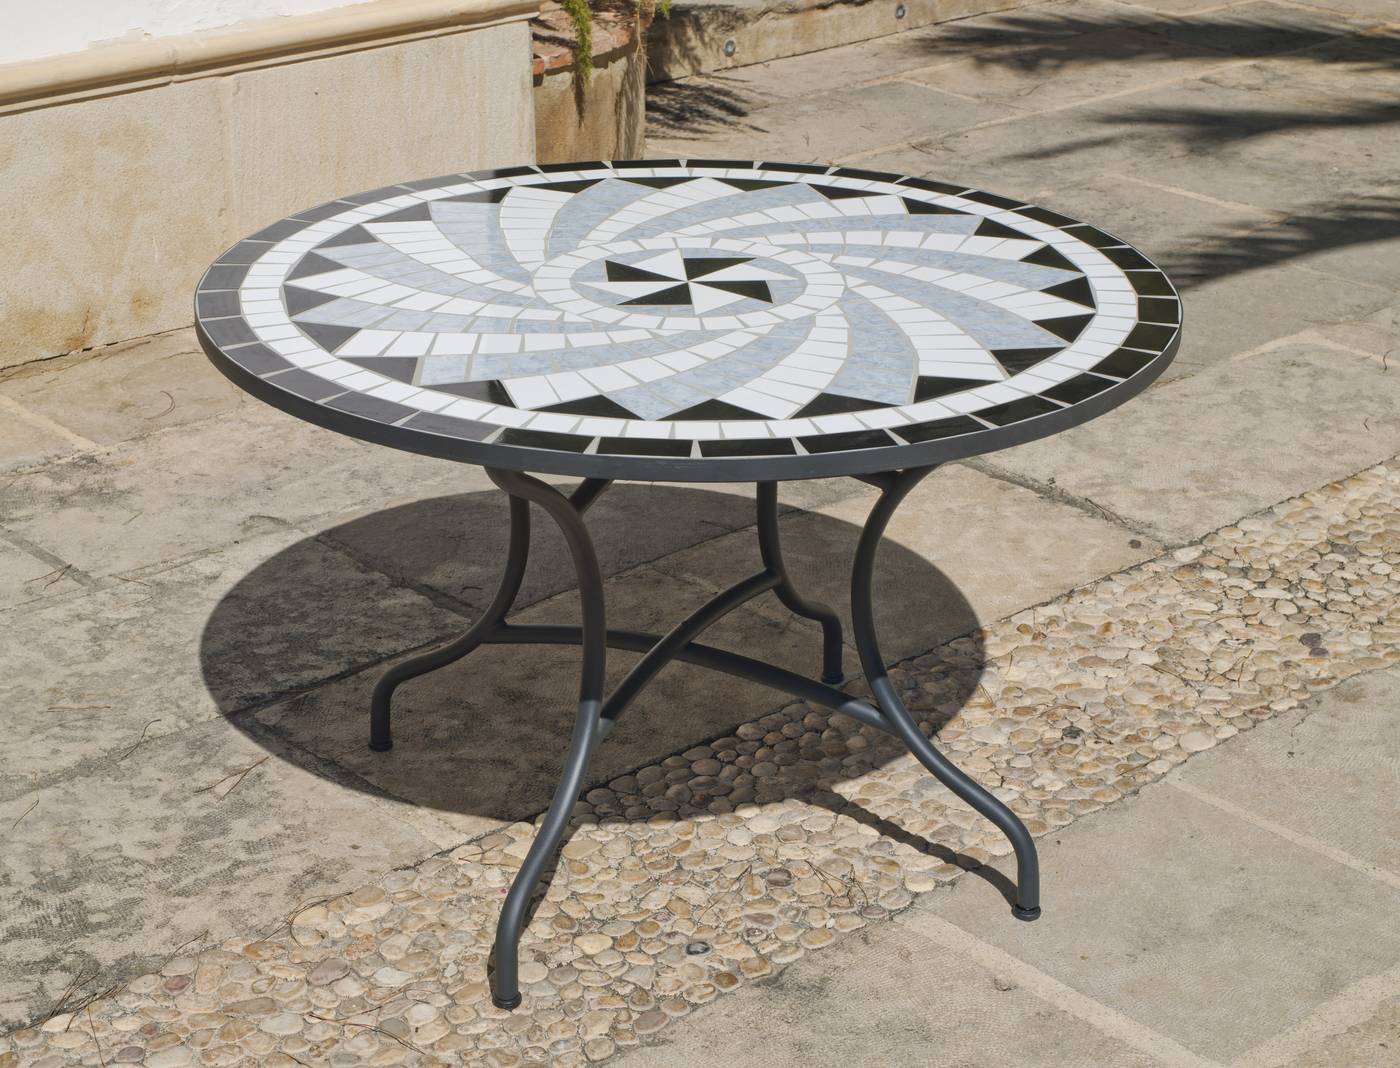 Mesa de forja color gris antracita, con tablero mosaico circular de 120 cm.